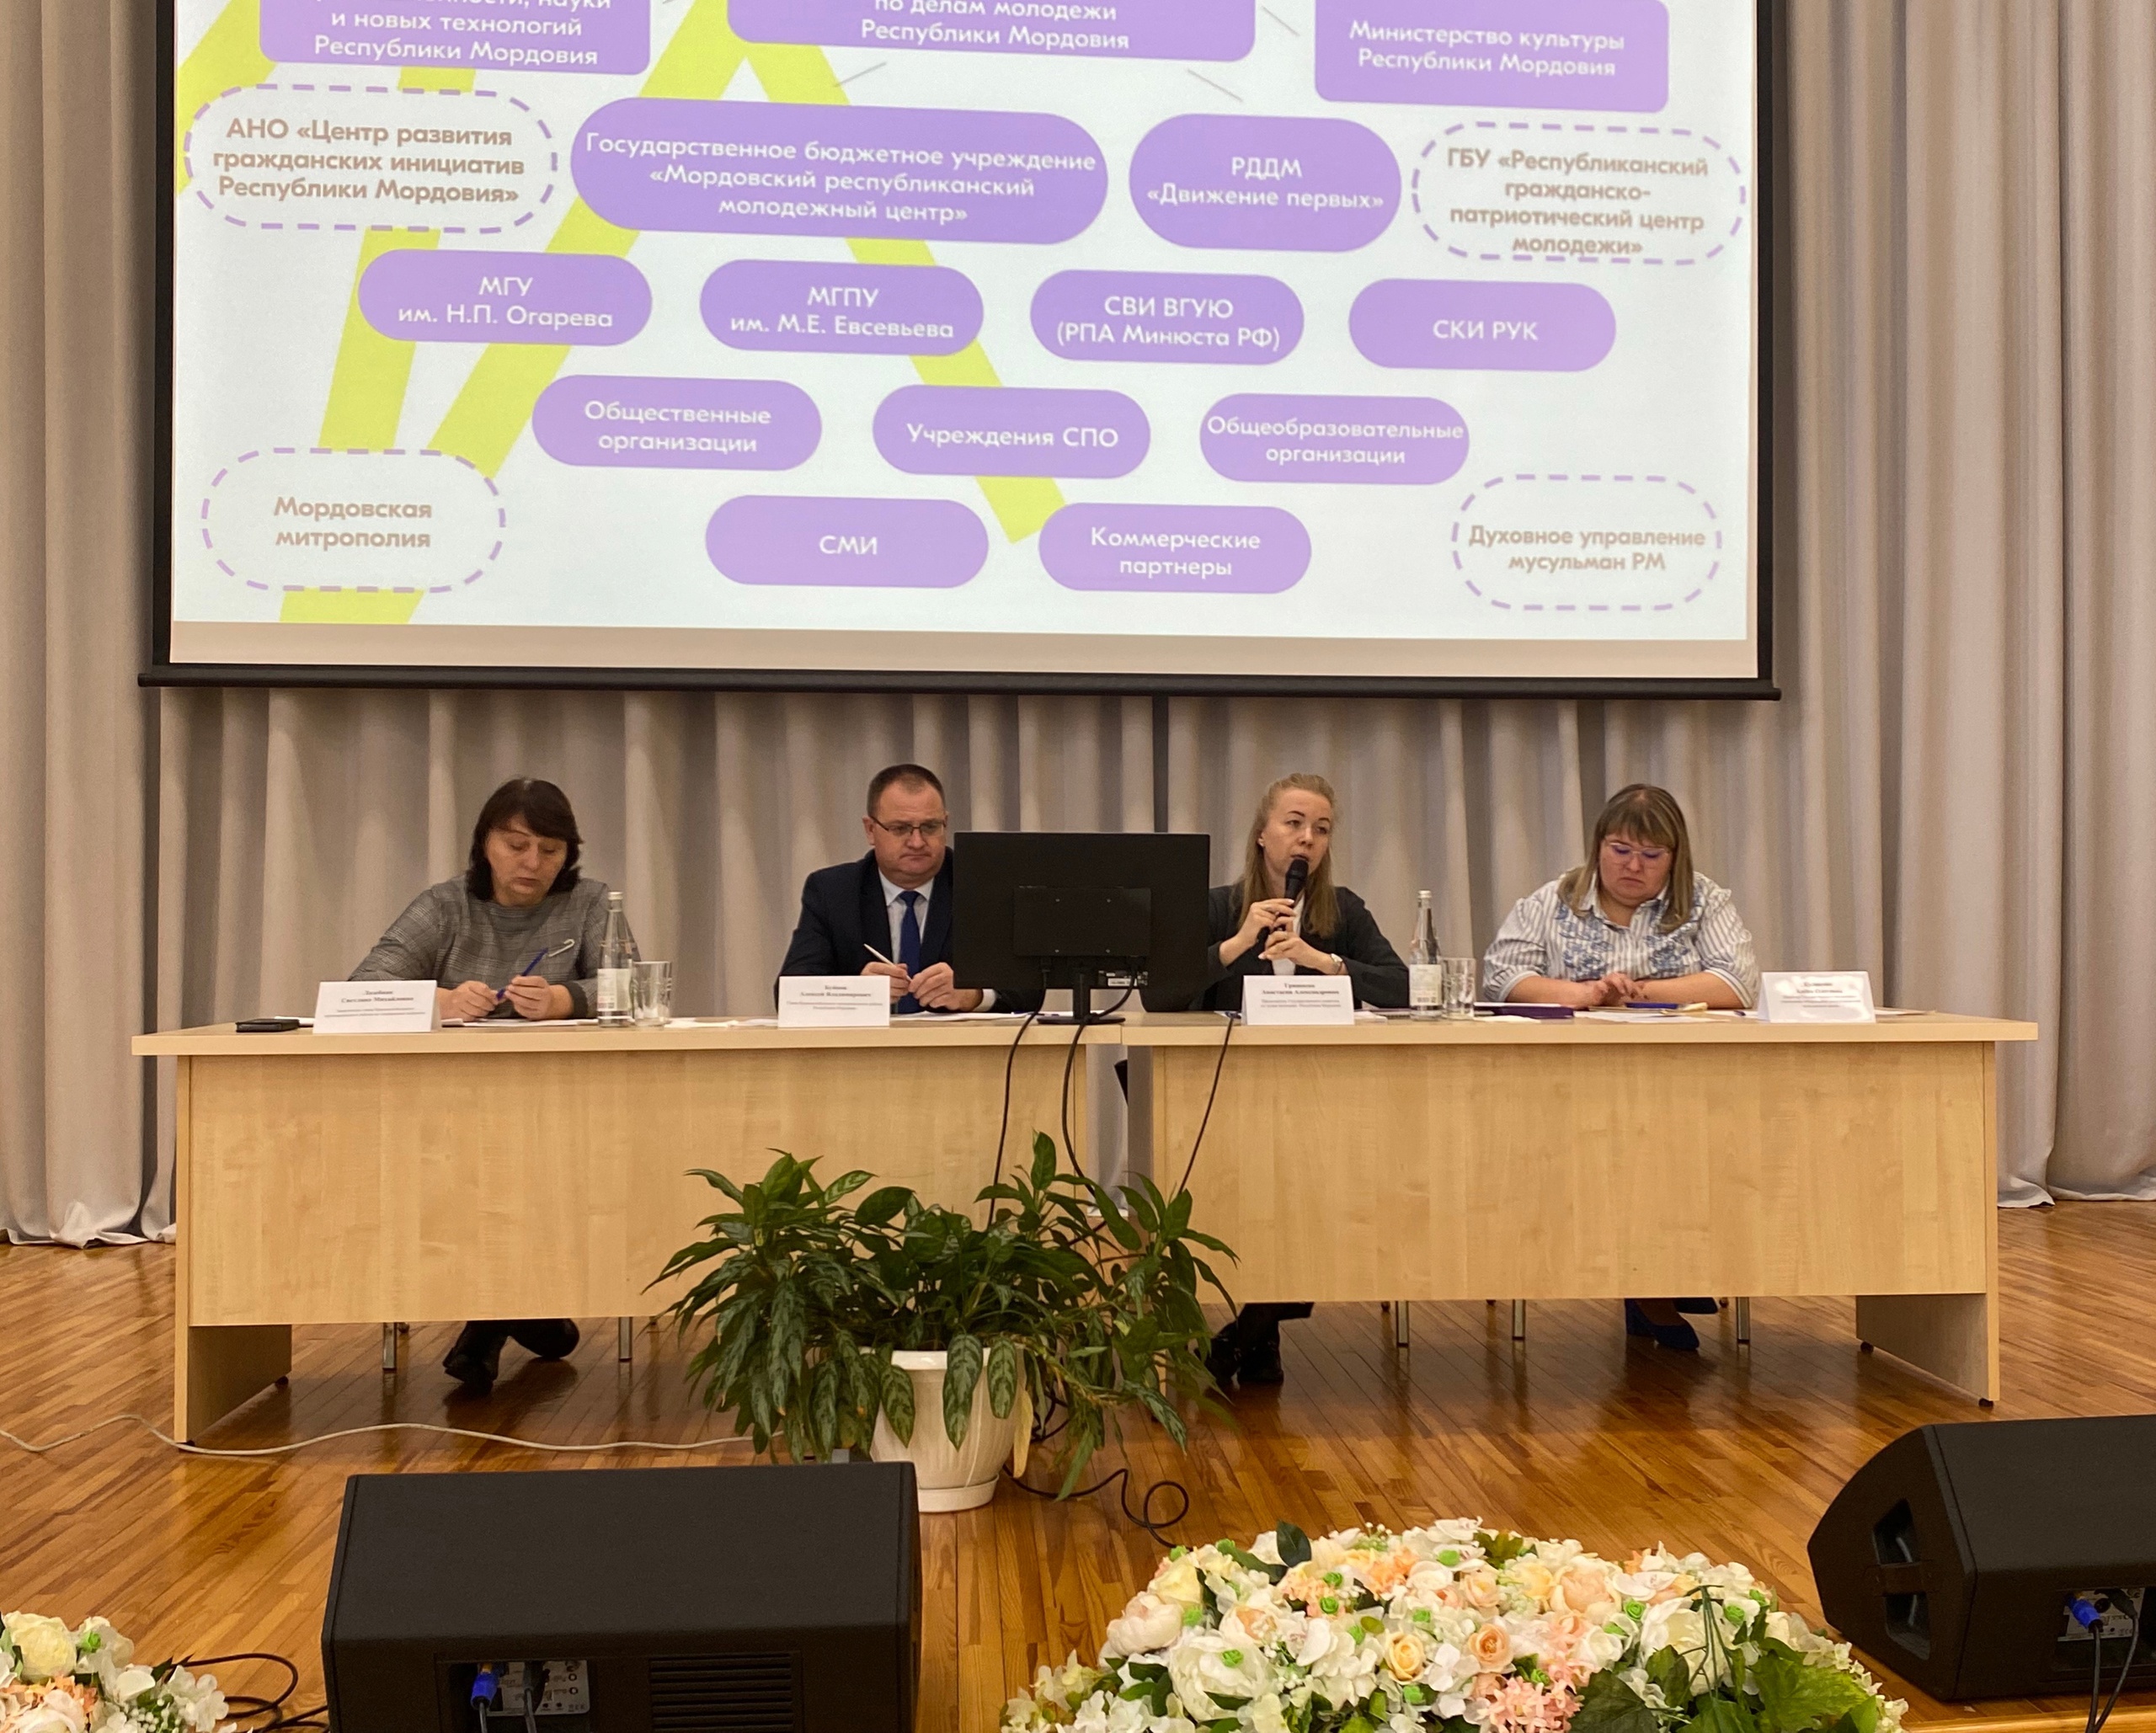 Семинар-совещание с Главой Краснослободского муниципального района по вопросам реализации молодежной политики на территории муниципального района.